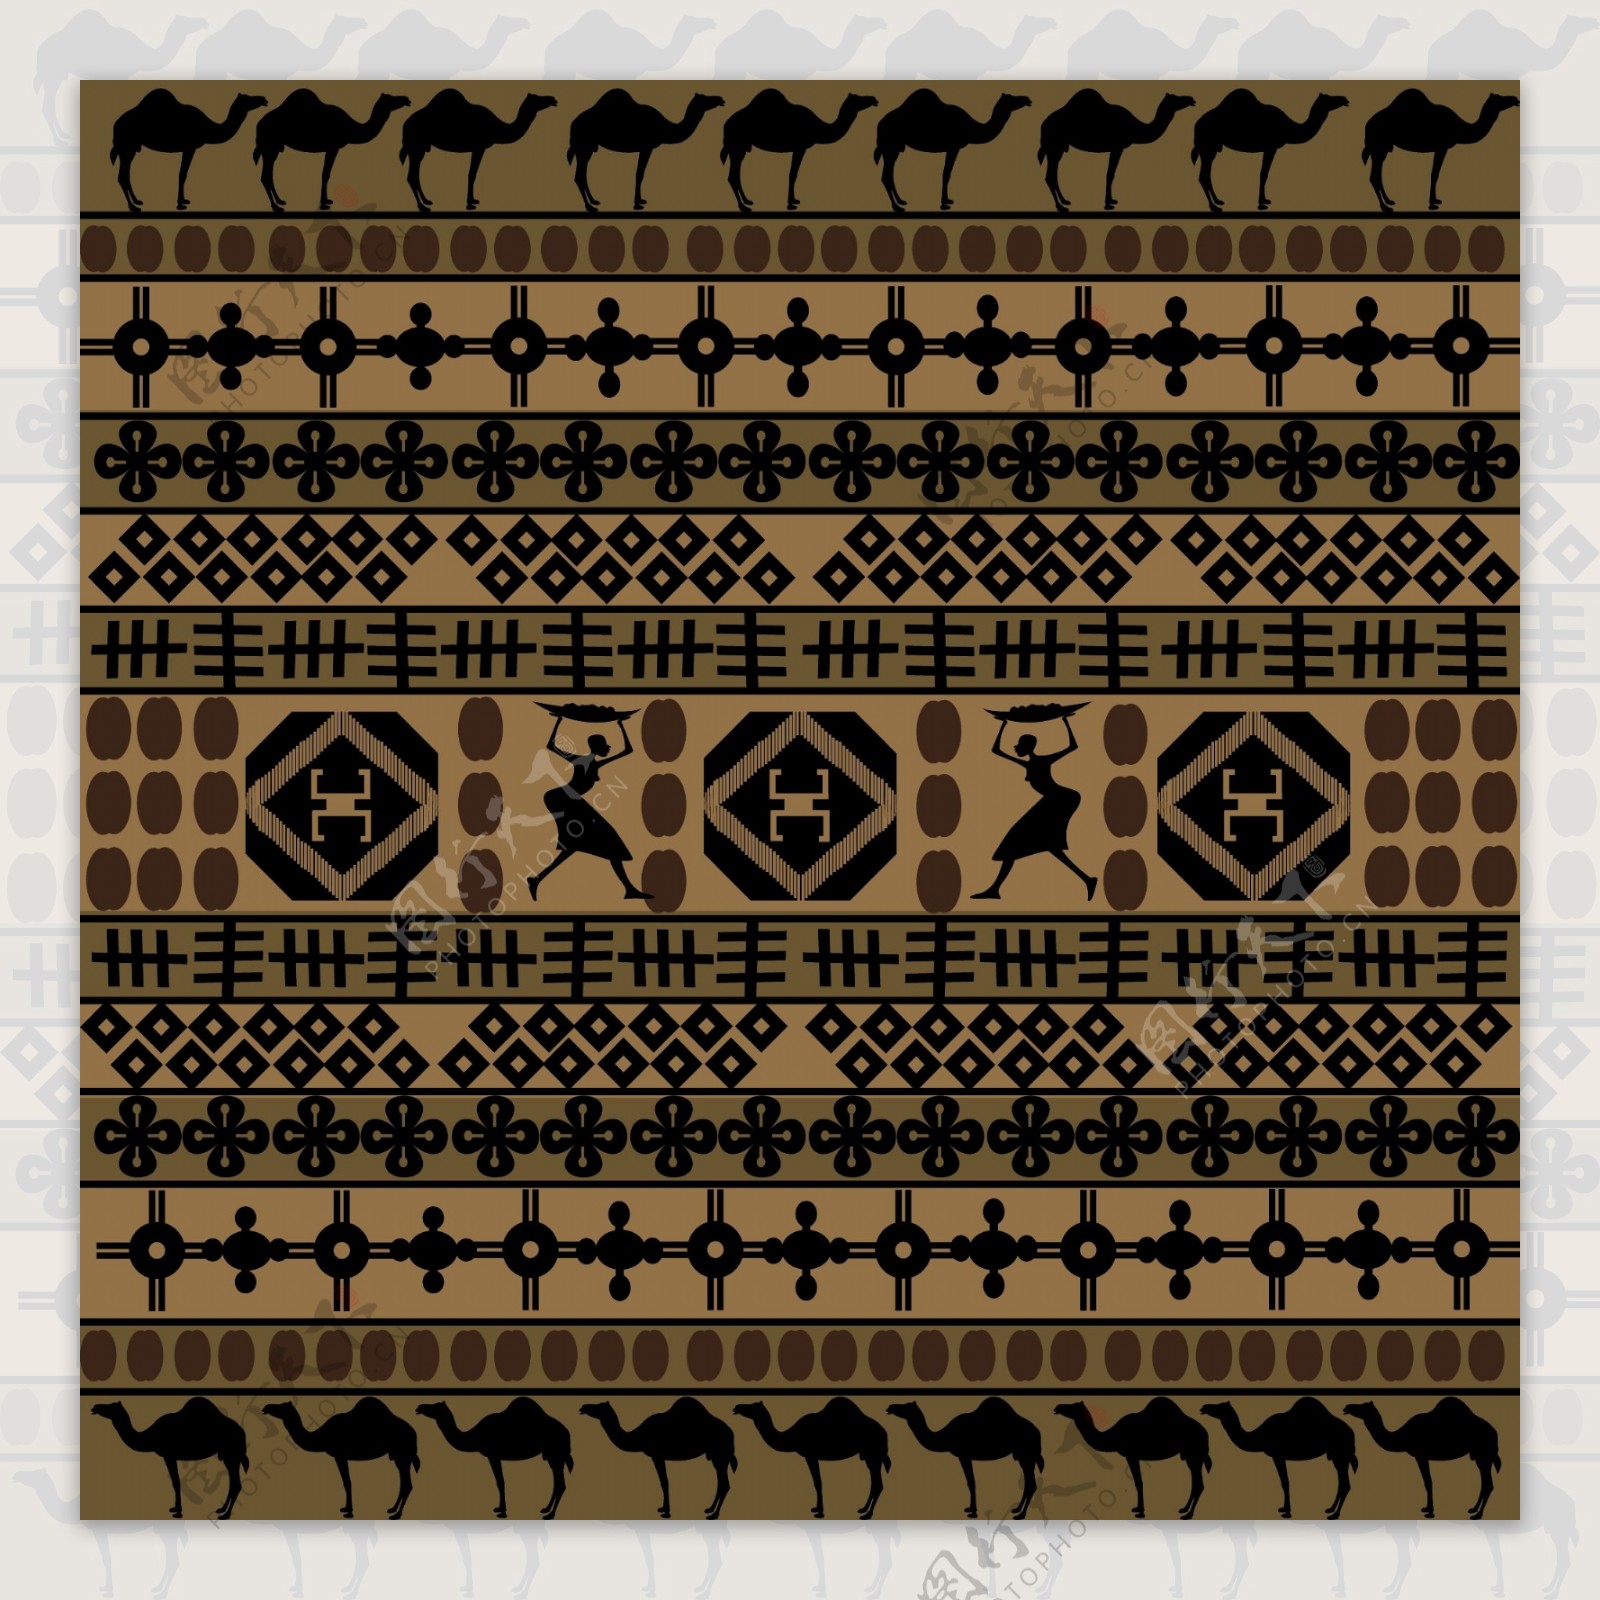 非洲传统图案背景矢量素材02矢量素材